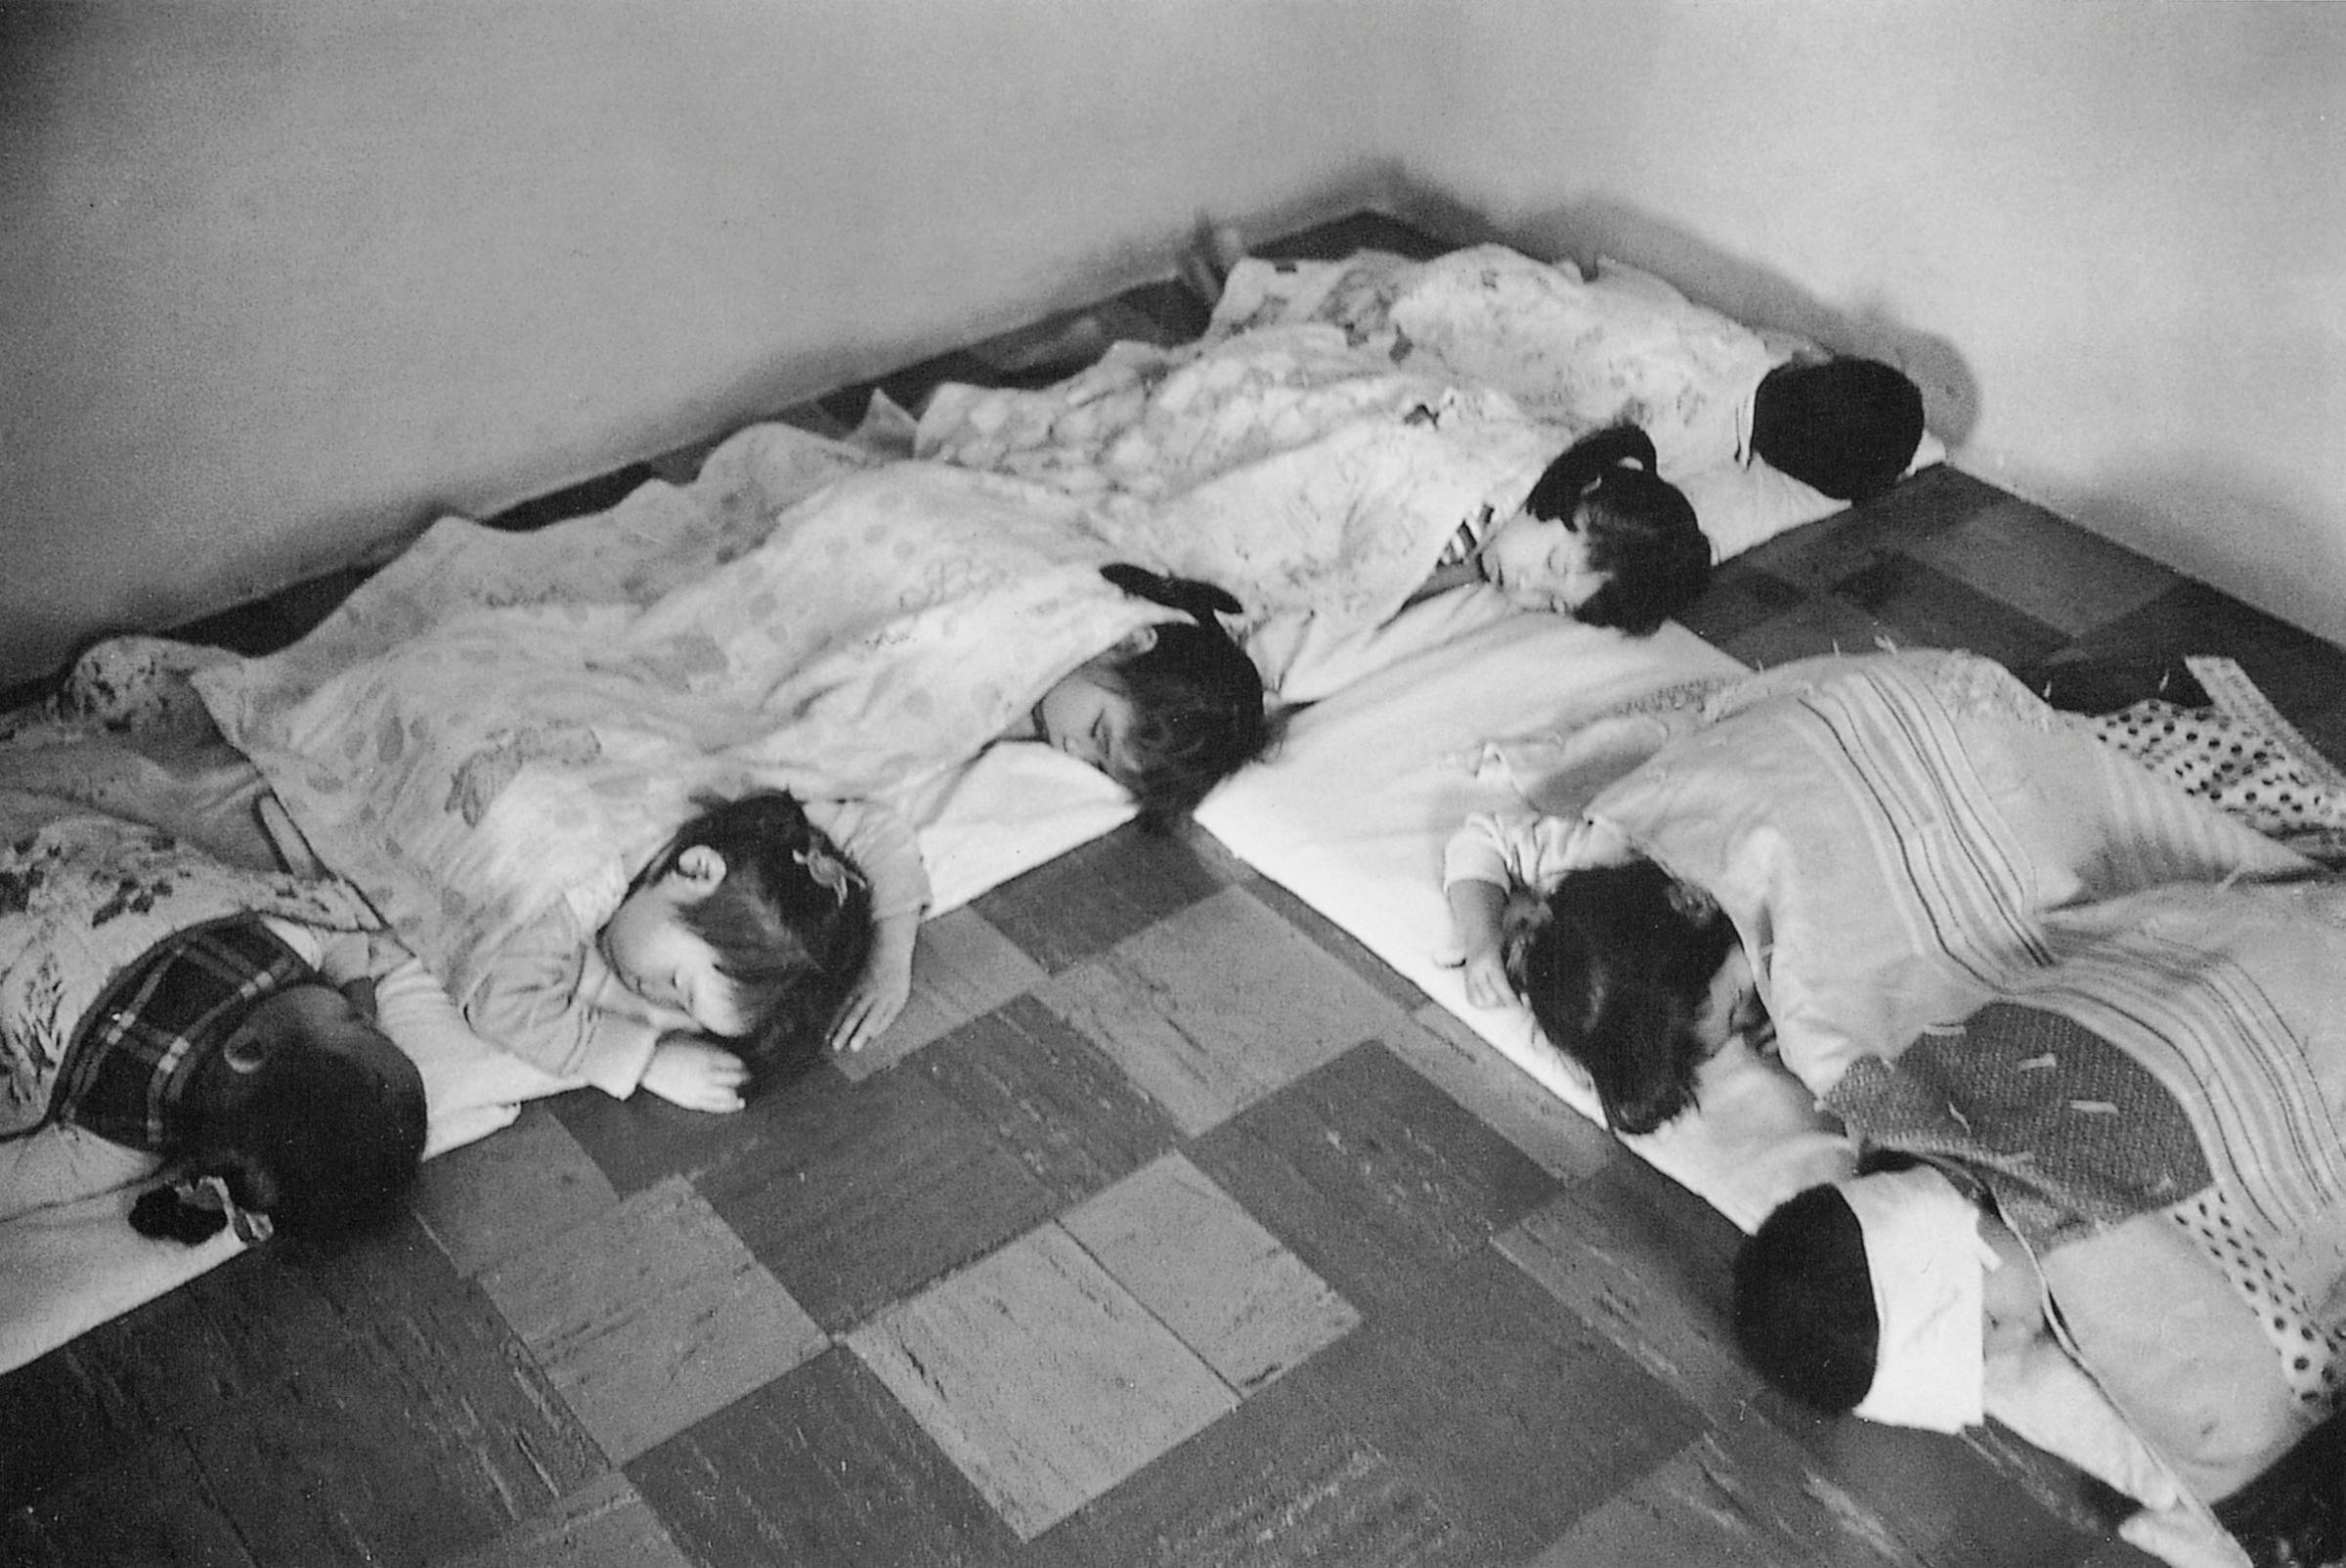 Biracial orphans of the Korean War, 1960s.